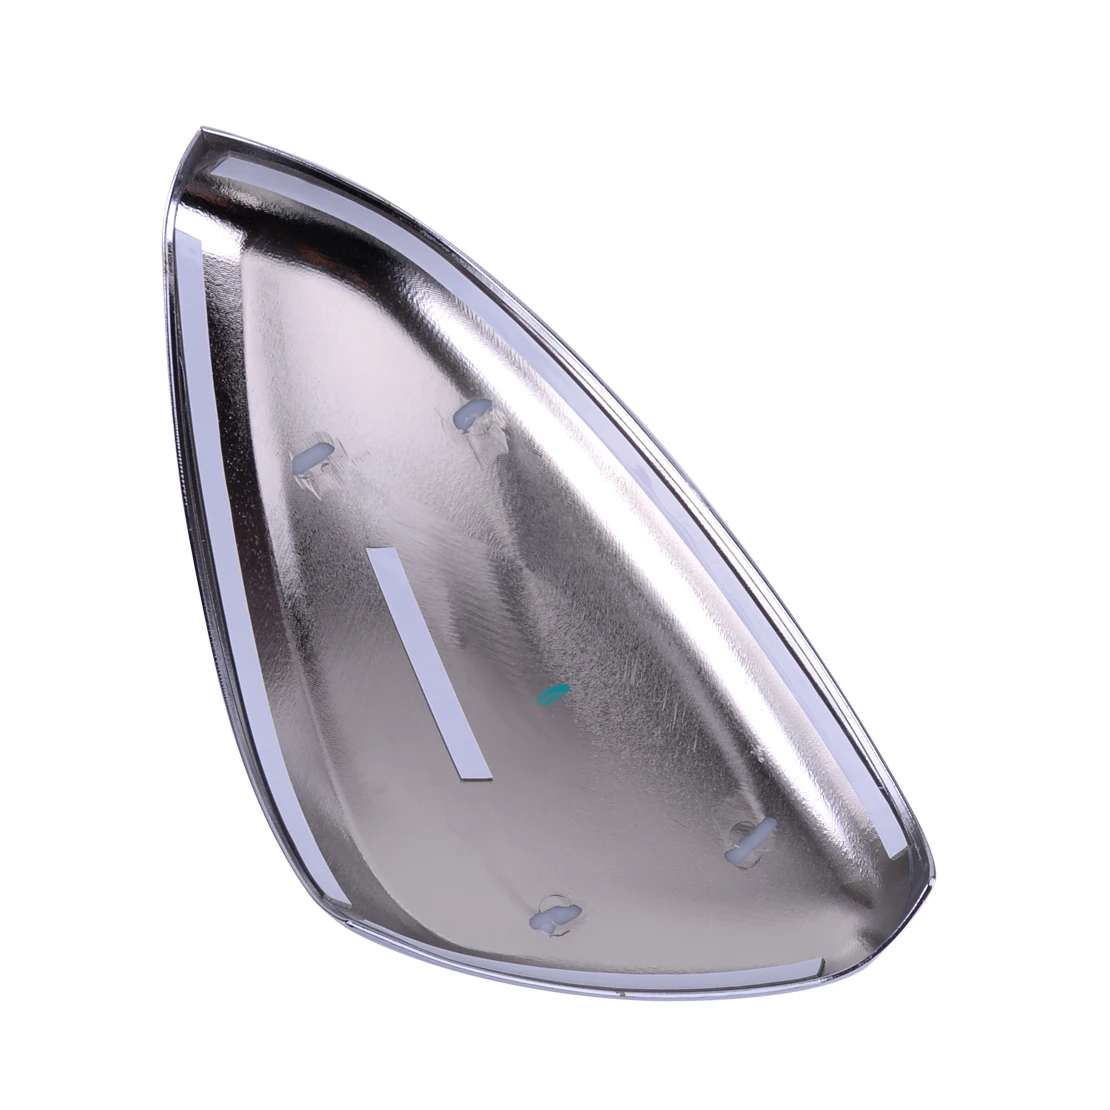 DWCX 2 шт ABS хромированная Автомобильная боковая крышка зеркала заднего вида отделка серебро Подходит для peugeot 2008 208 2013